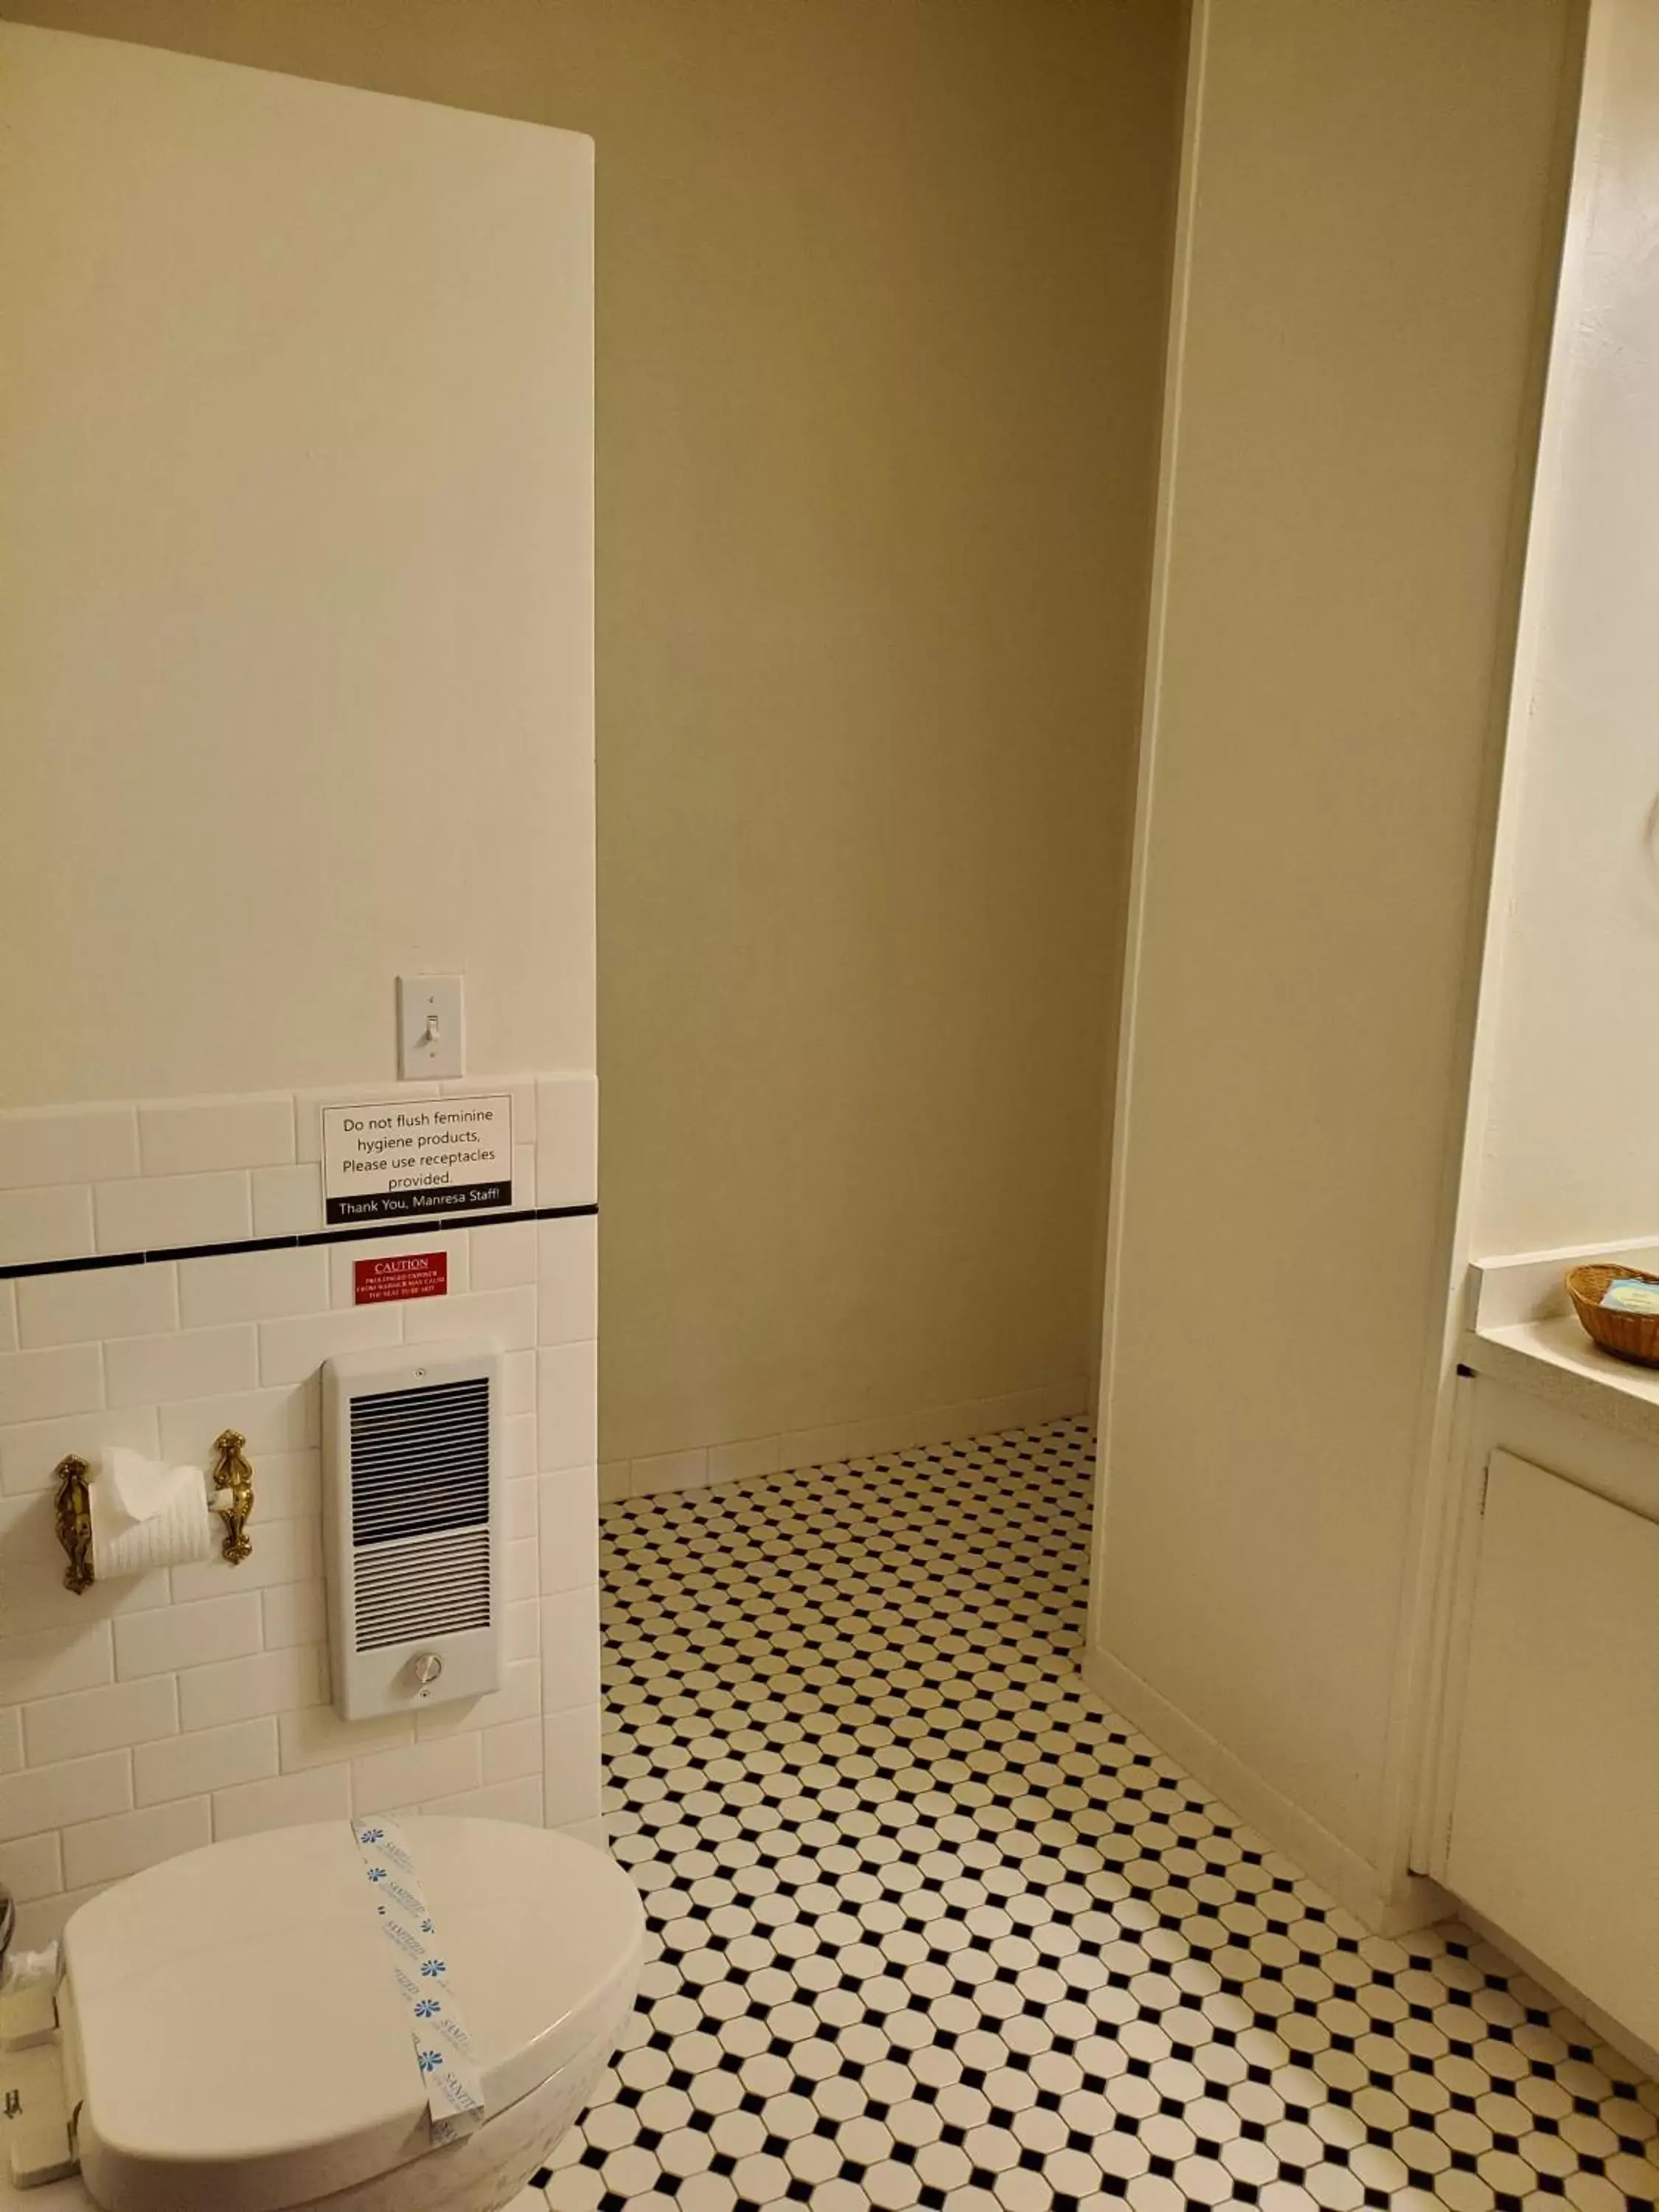 Toilet, Bathroom in Manresa Castle